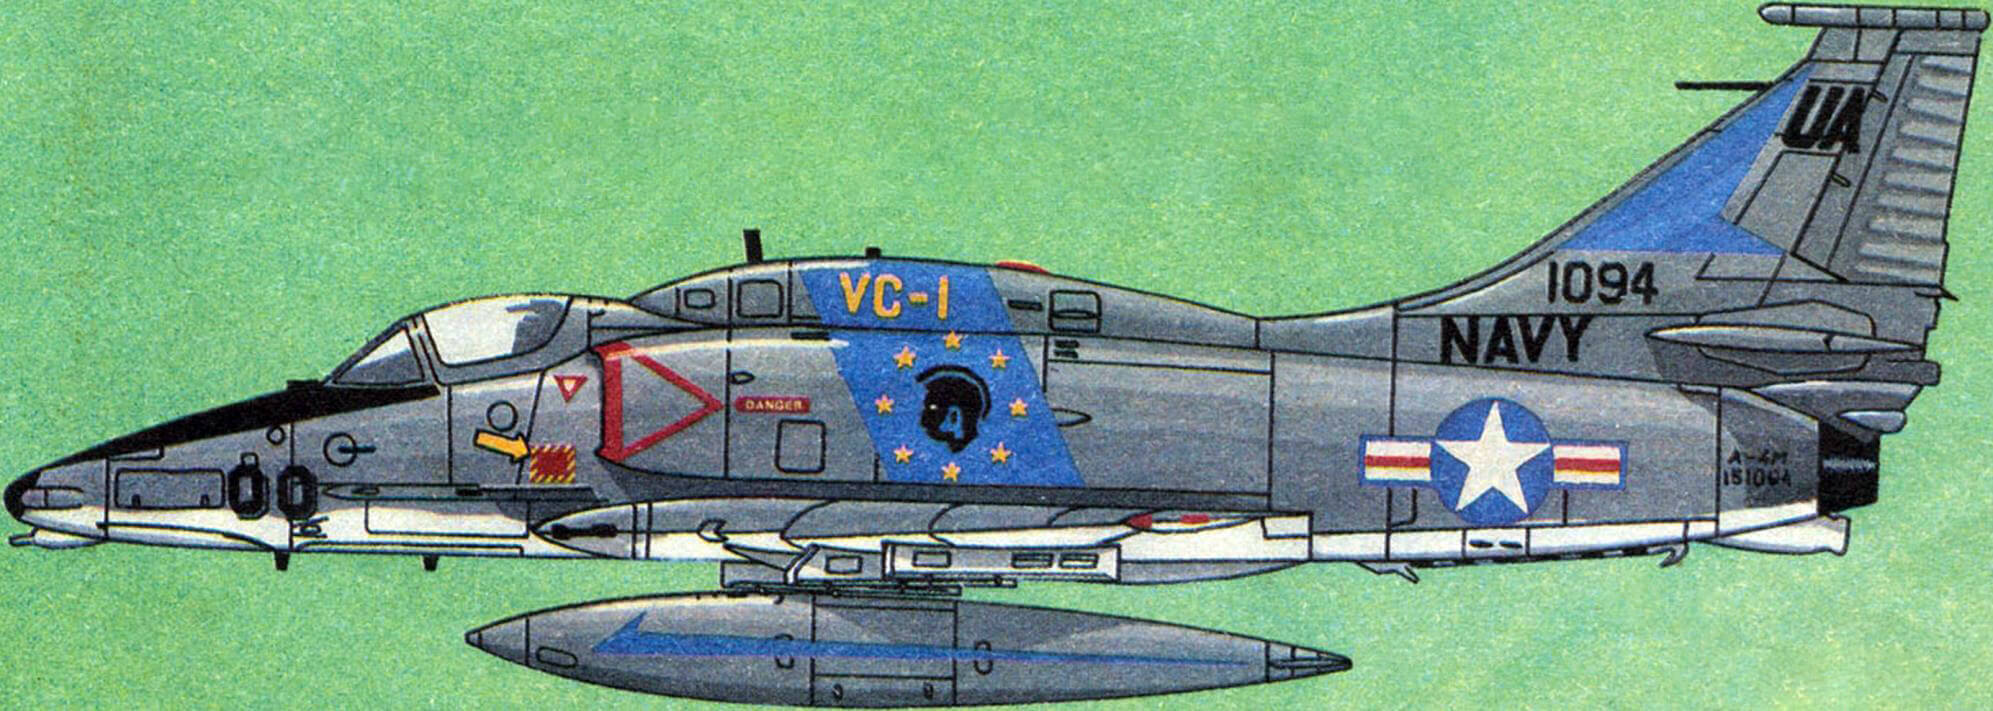 A4M эскадрильи обеспечения боевой подготовки VC-1, 1979 год.